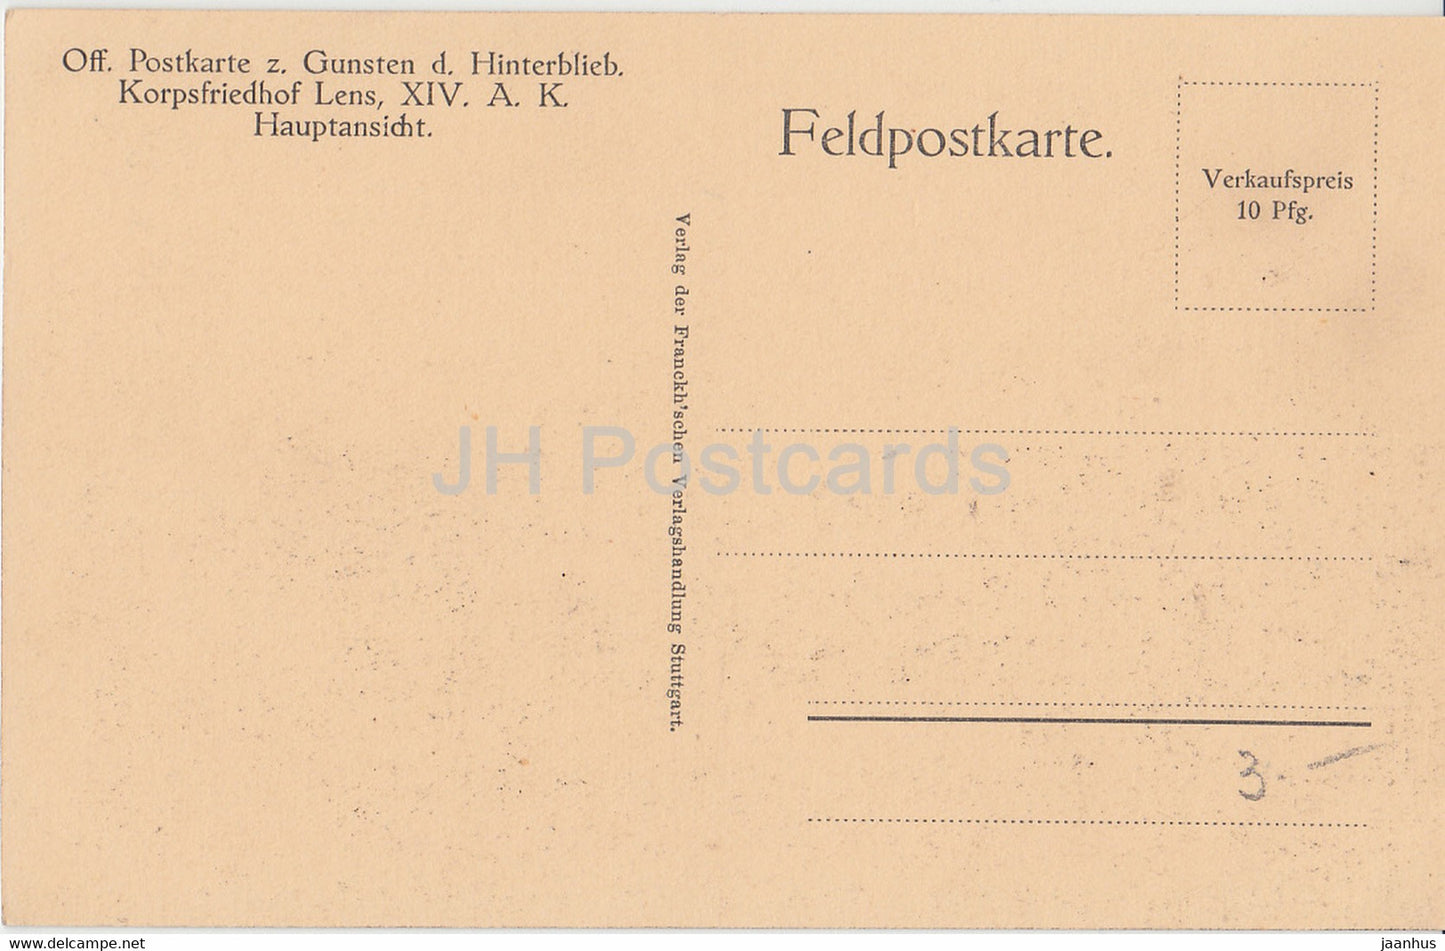 Off Postkarte z Gunsten d Hinterblieb - Korpsfriedhof Lens - Haupansicht - Feldpostkarte alte Postkarte - Frankreich - ungebraucht